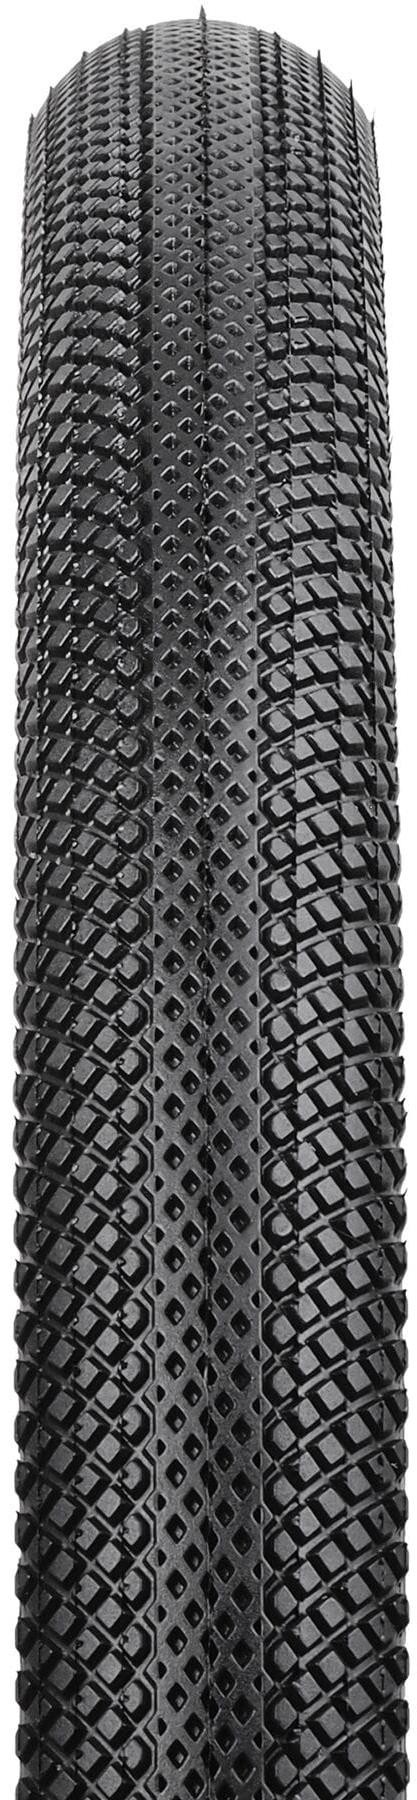 Speedster Cyclocross / Gravel 700c Tyre image 1